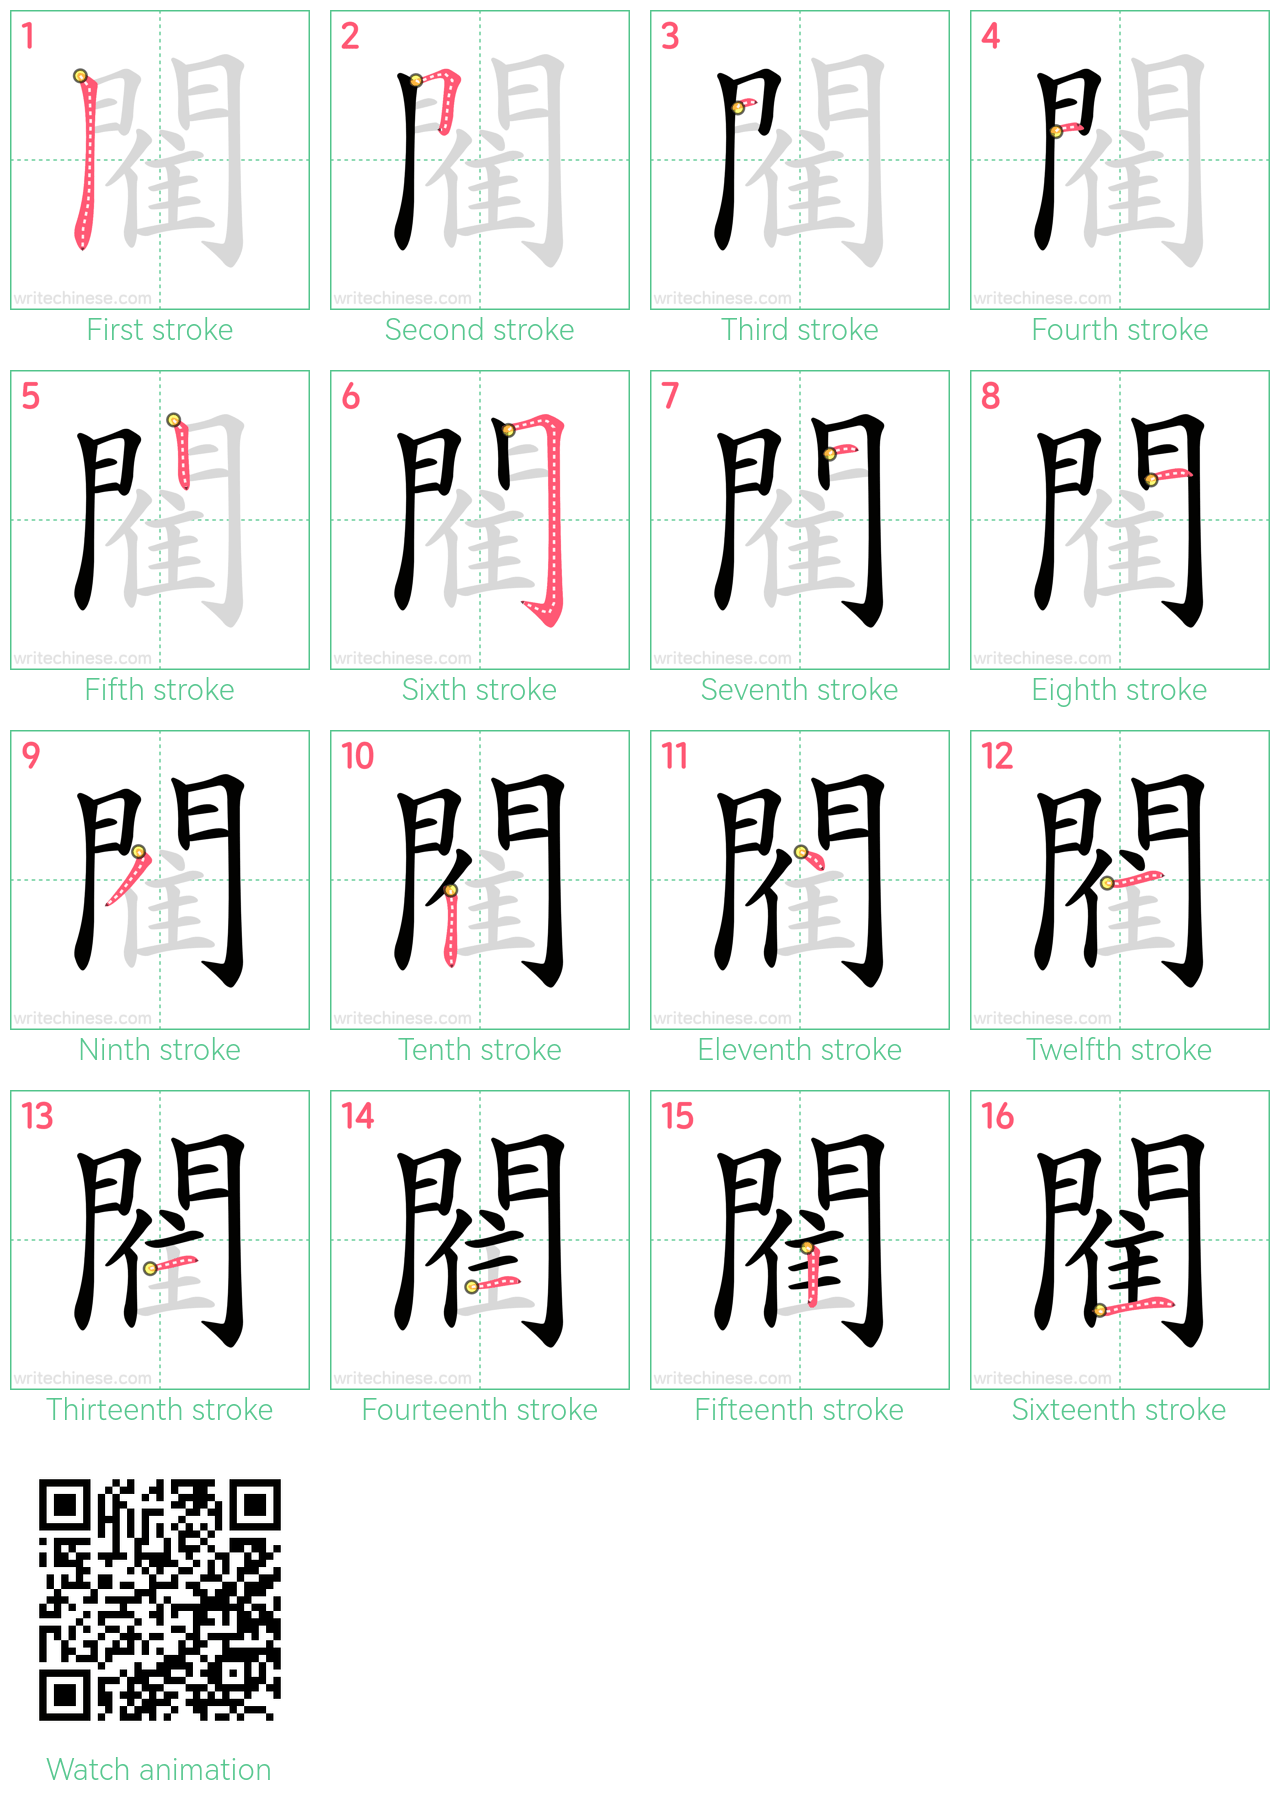 閵 step-by-step stroke order diagrams